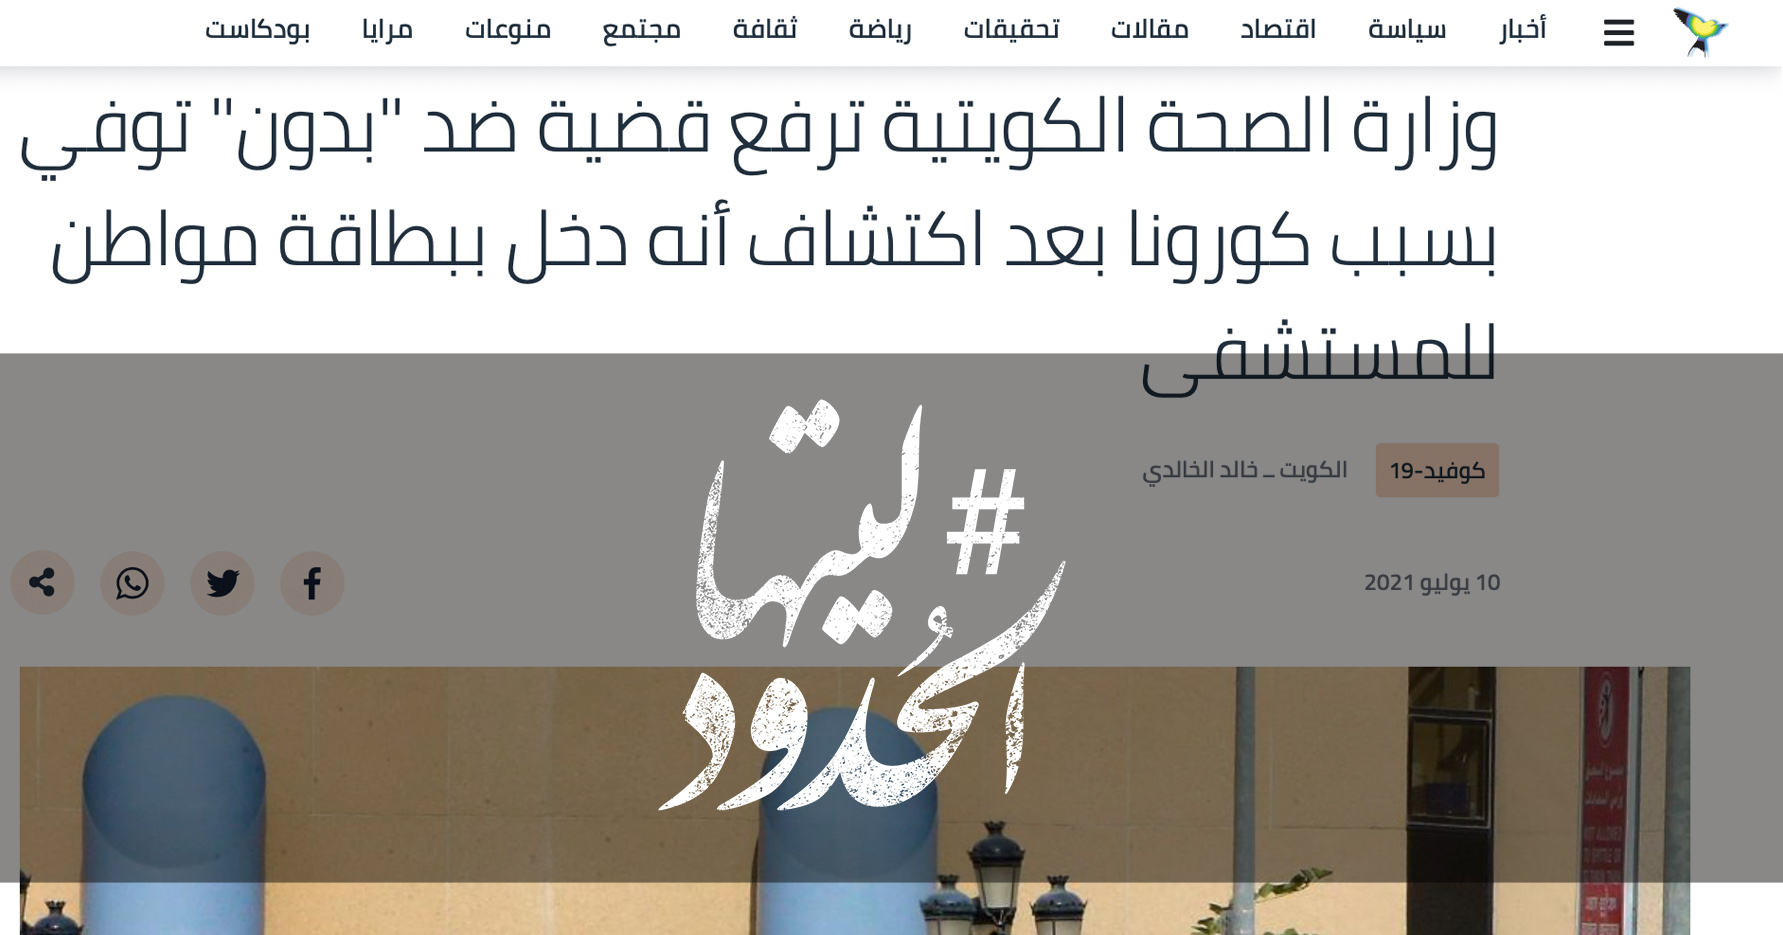 صورة وزارة الصحة الكويتية ترفع قضية ضد "بدون" توفي بسبب كورونا بعد اكتشاف أنه دخل ببطاقة مواطن للمستشفى